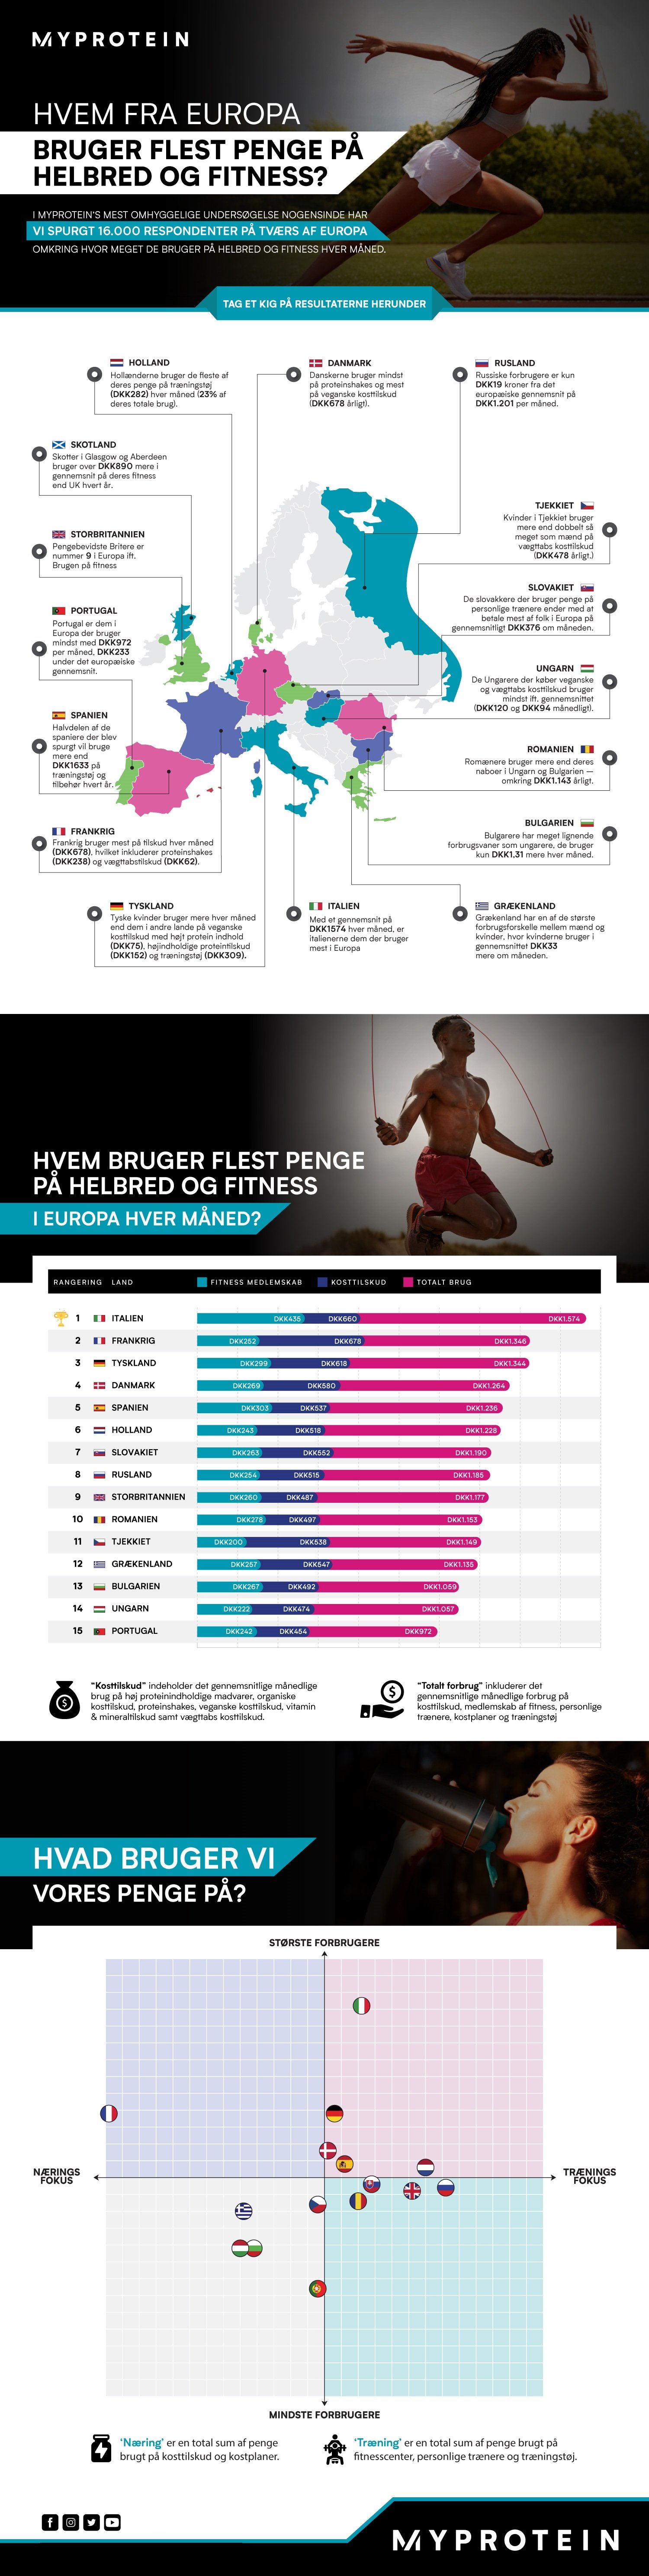 Hvem bruger flest penge på sundhed og fitness i Europa?